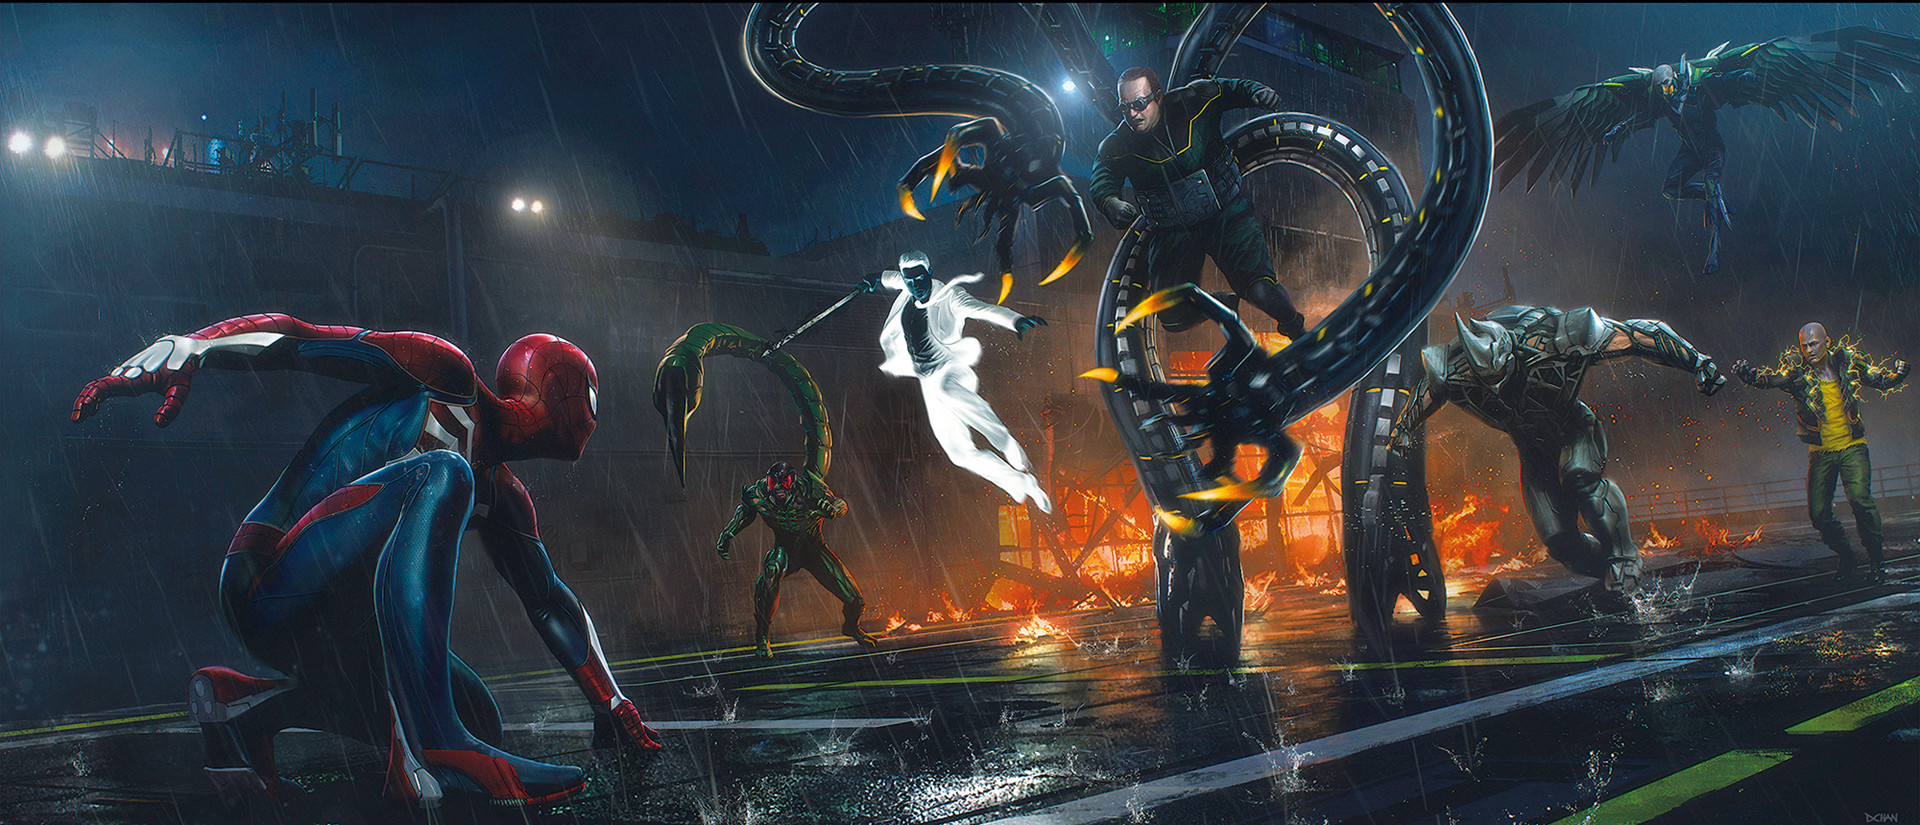 《漫威蜘蛛侠》精美艺术概念图 超级英雄激战不休